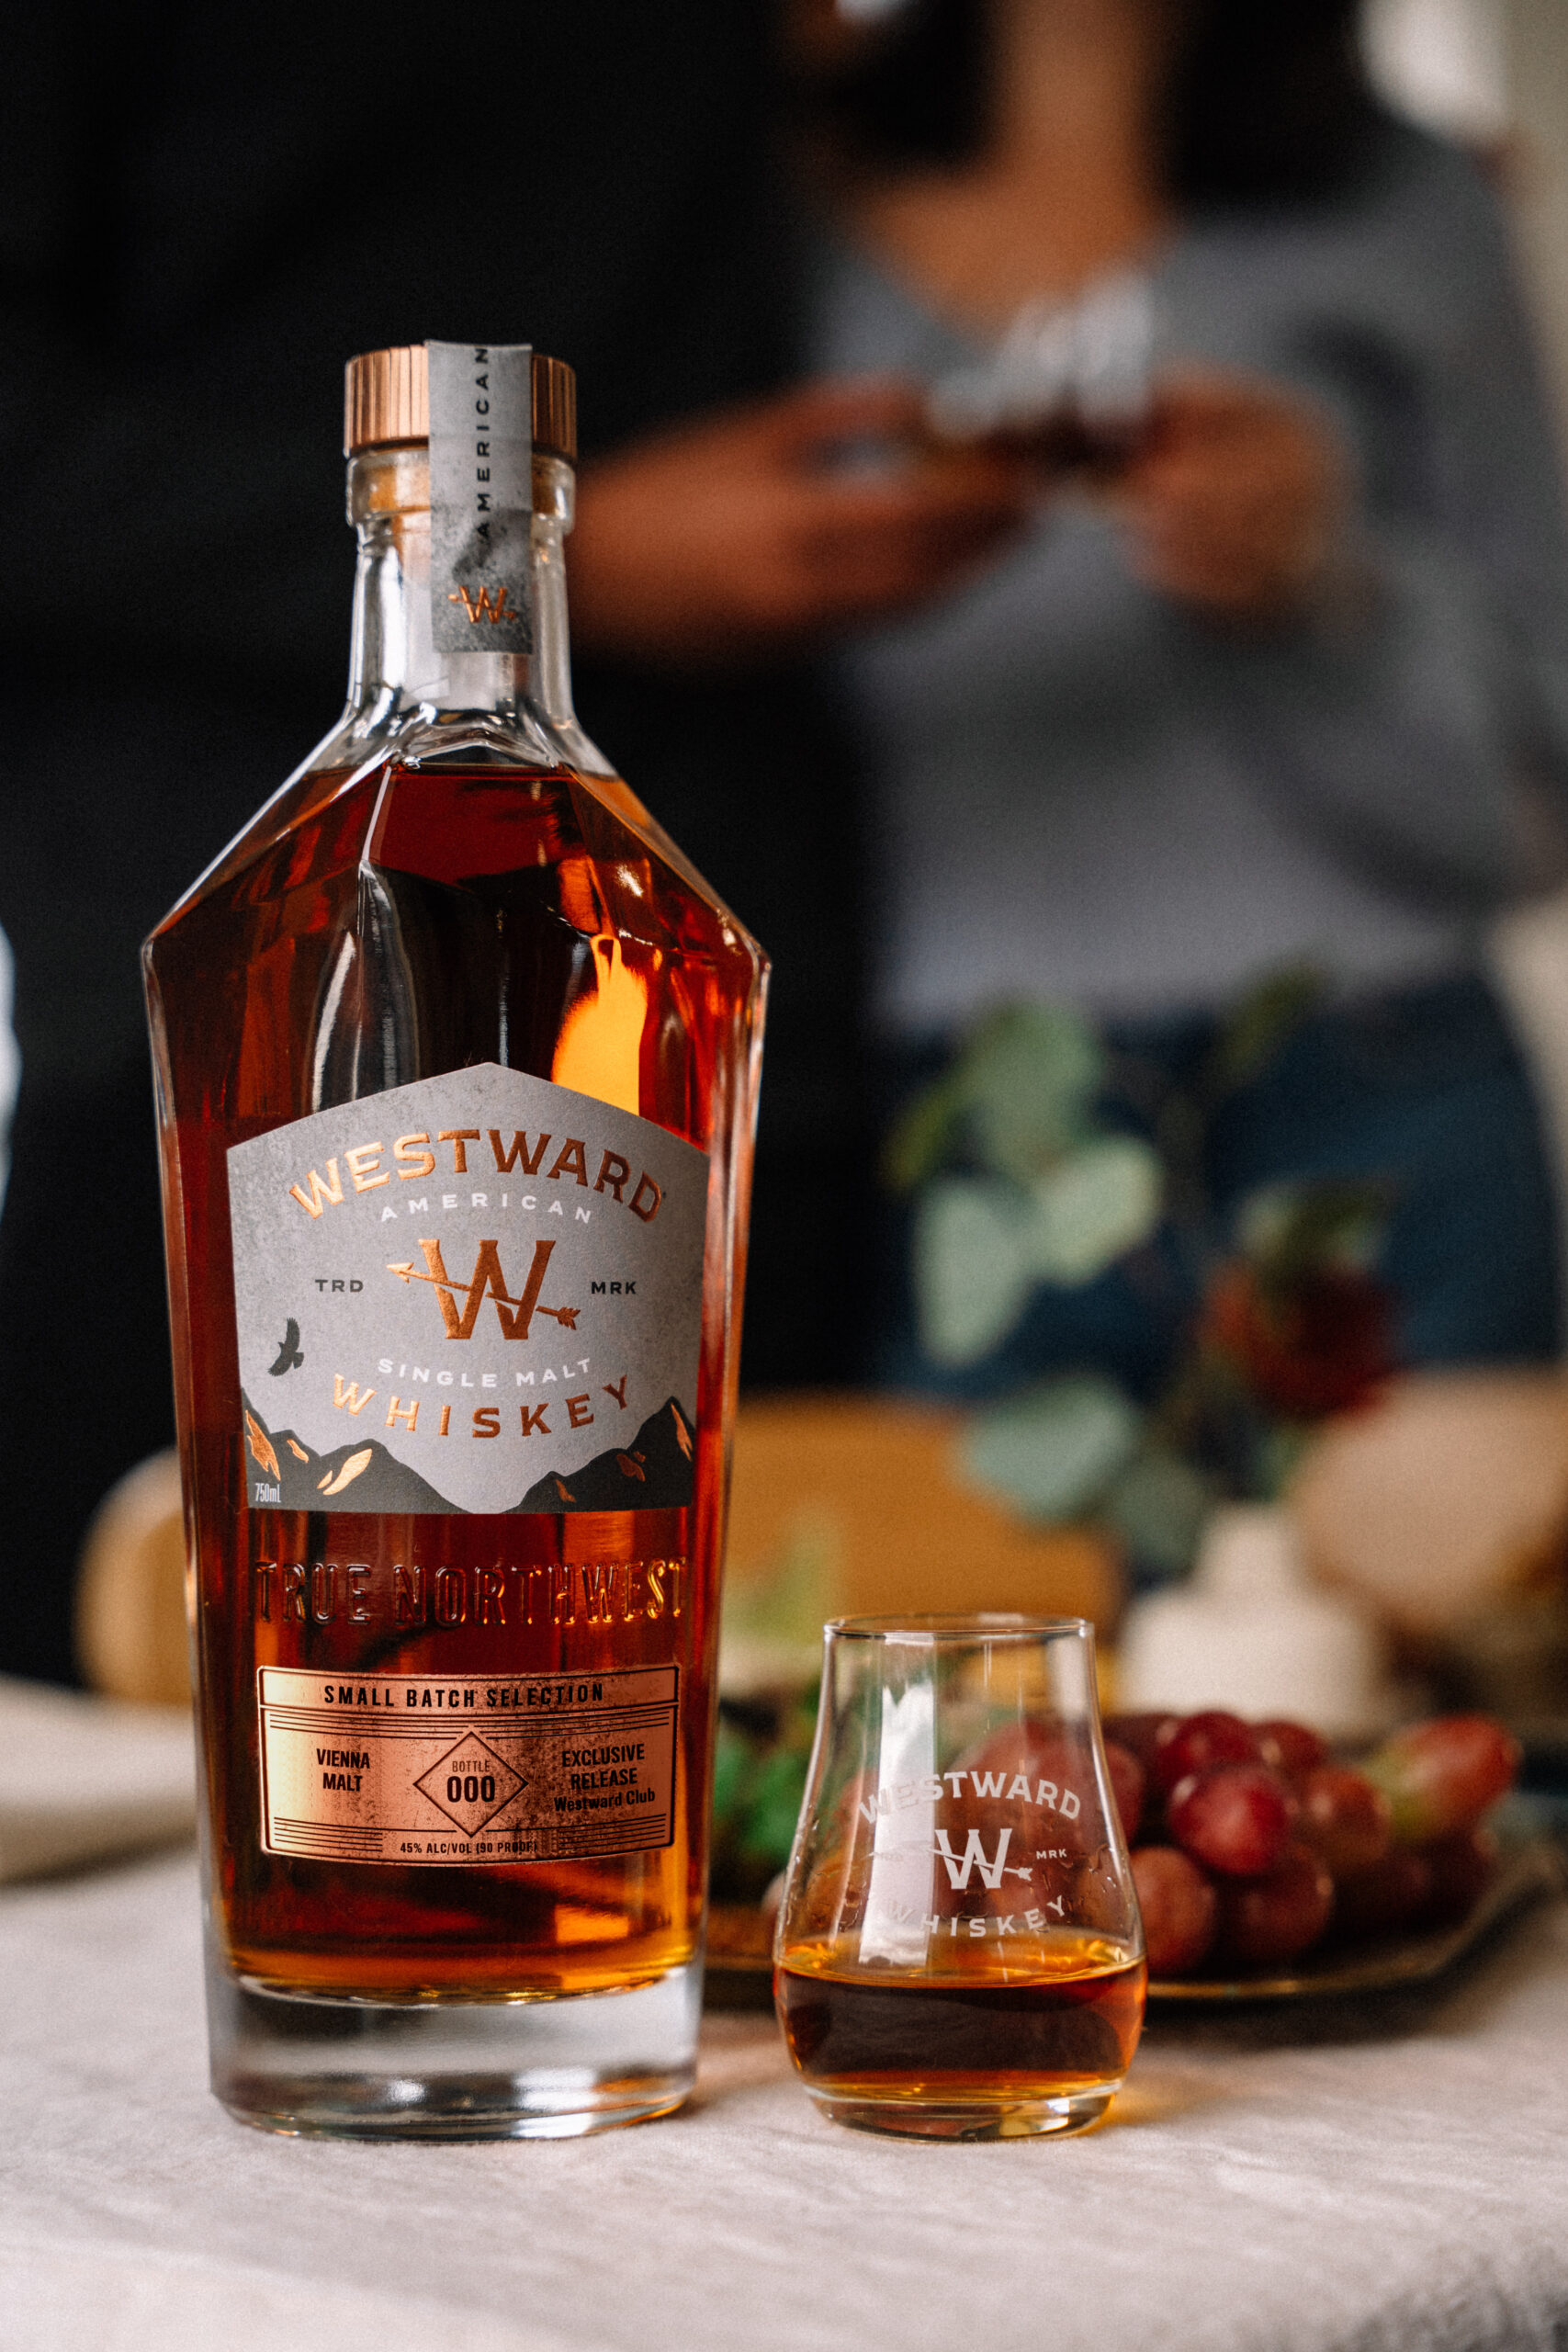 Westward’s New Whiskey is “Liquid Kismet” Made with Vienna Malt